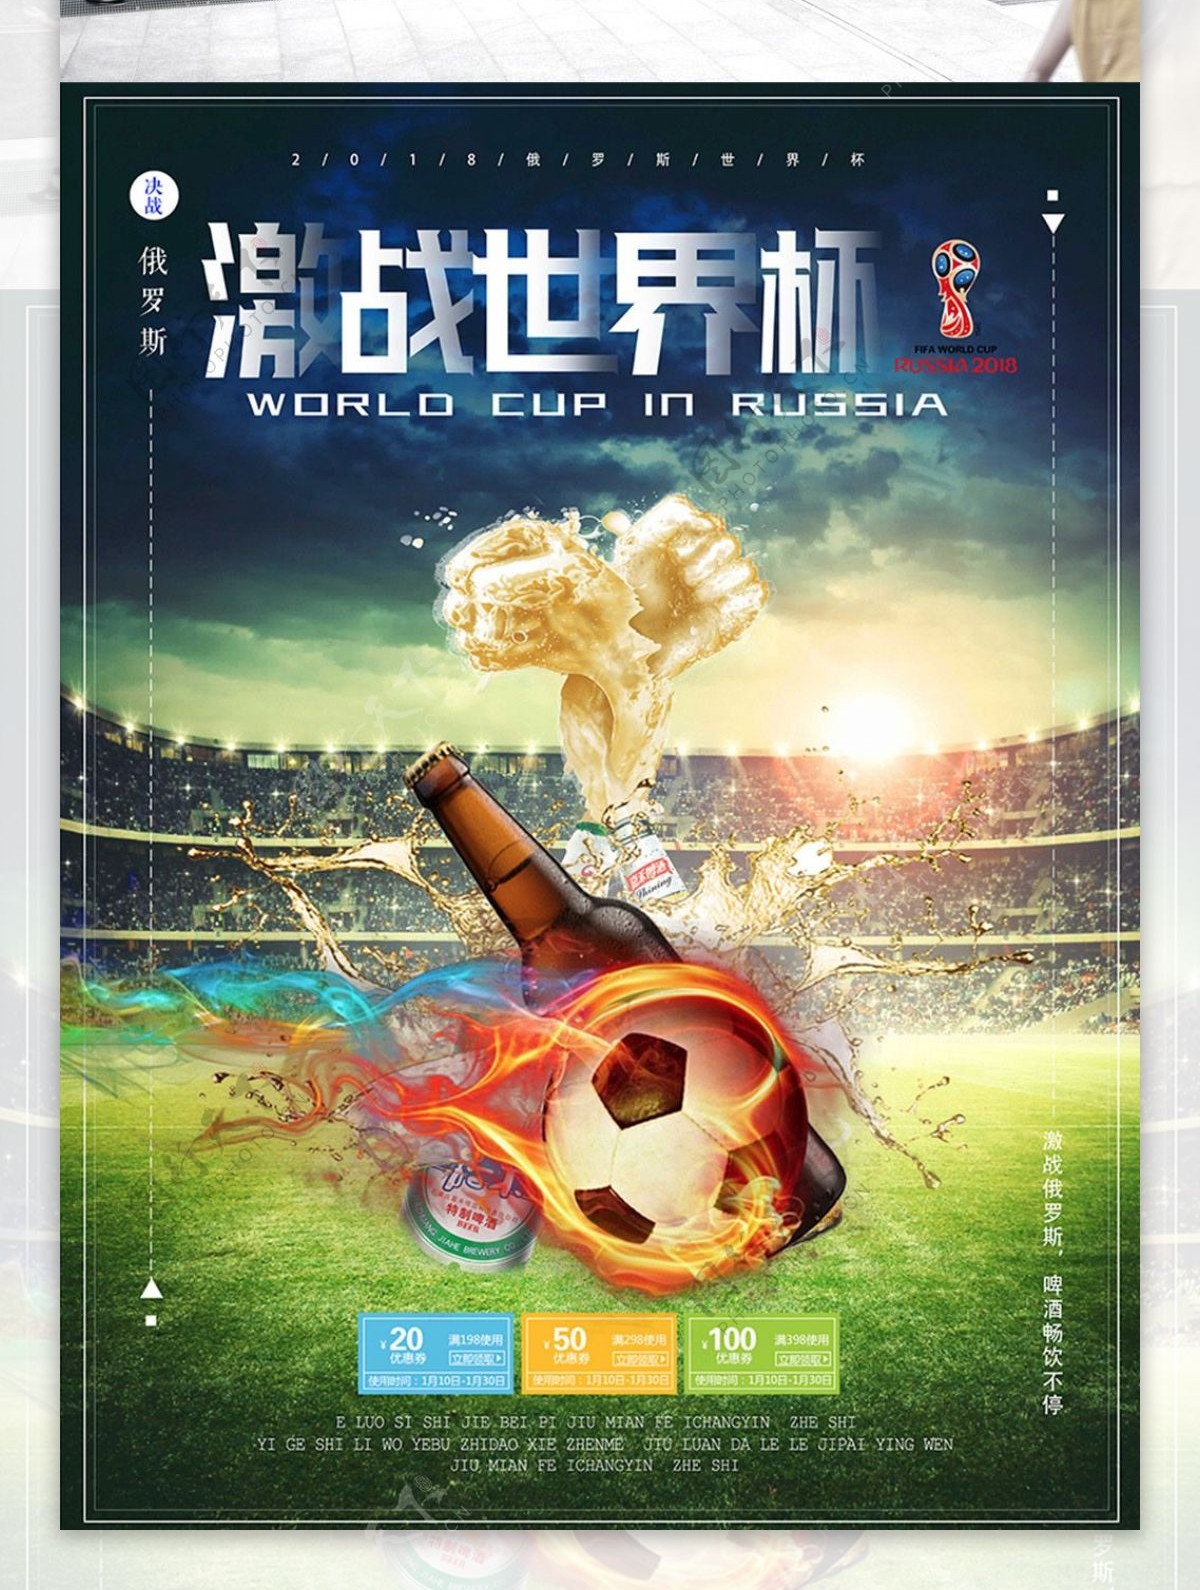 激战世界杯创意足球啤酒宣传促销海报